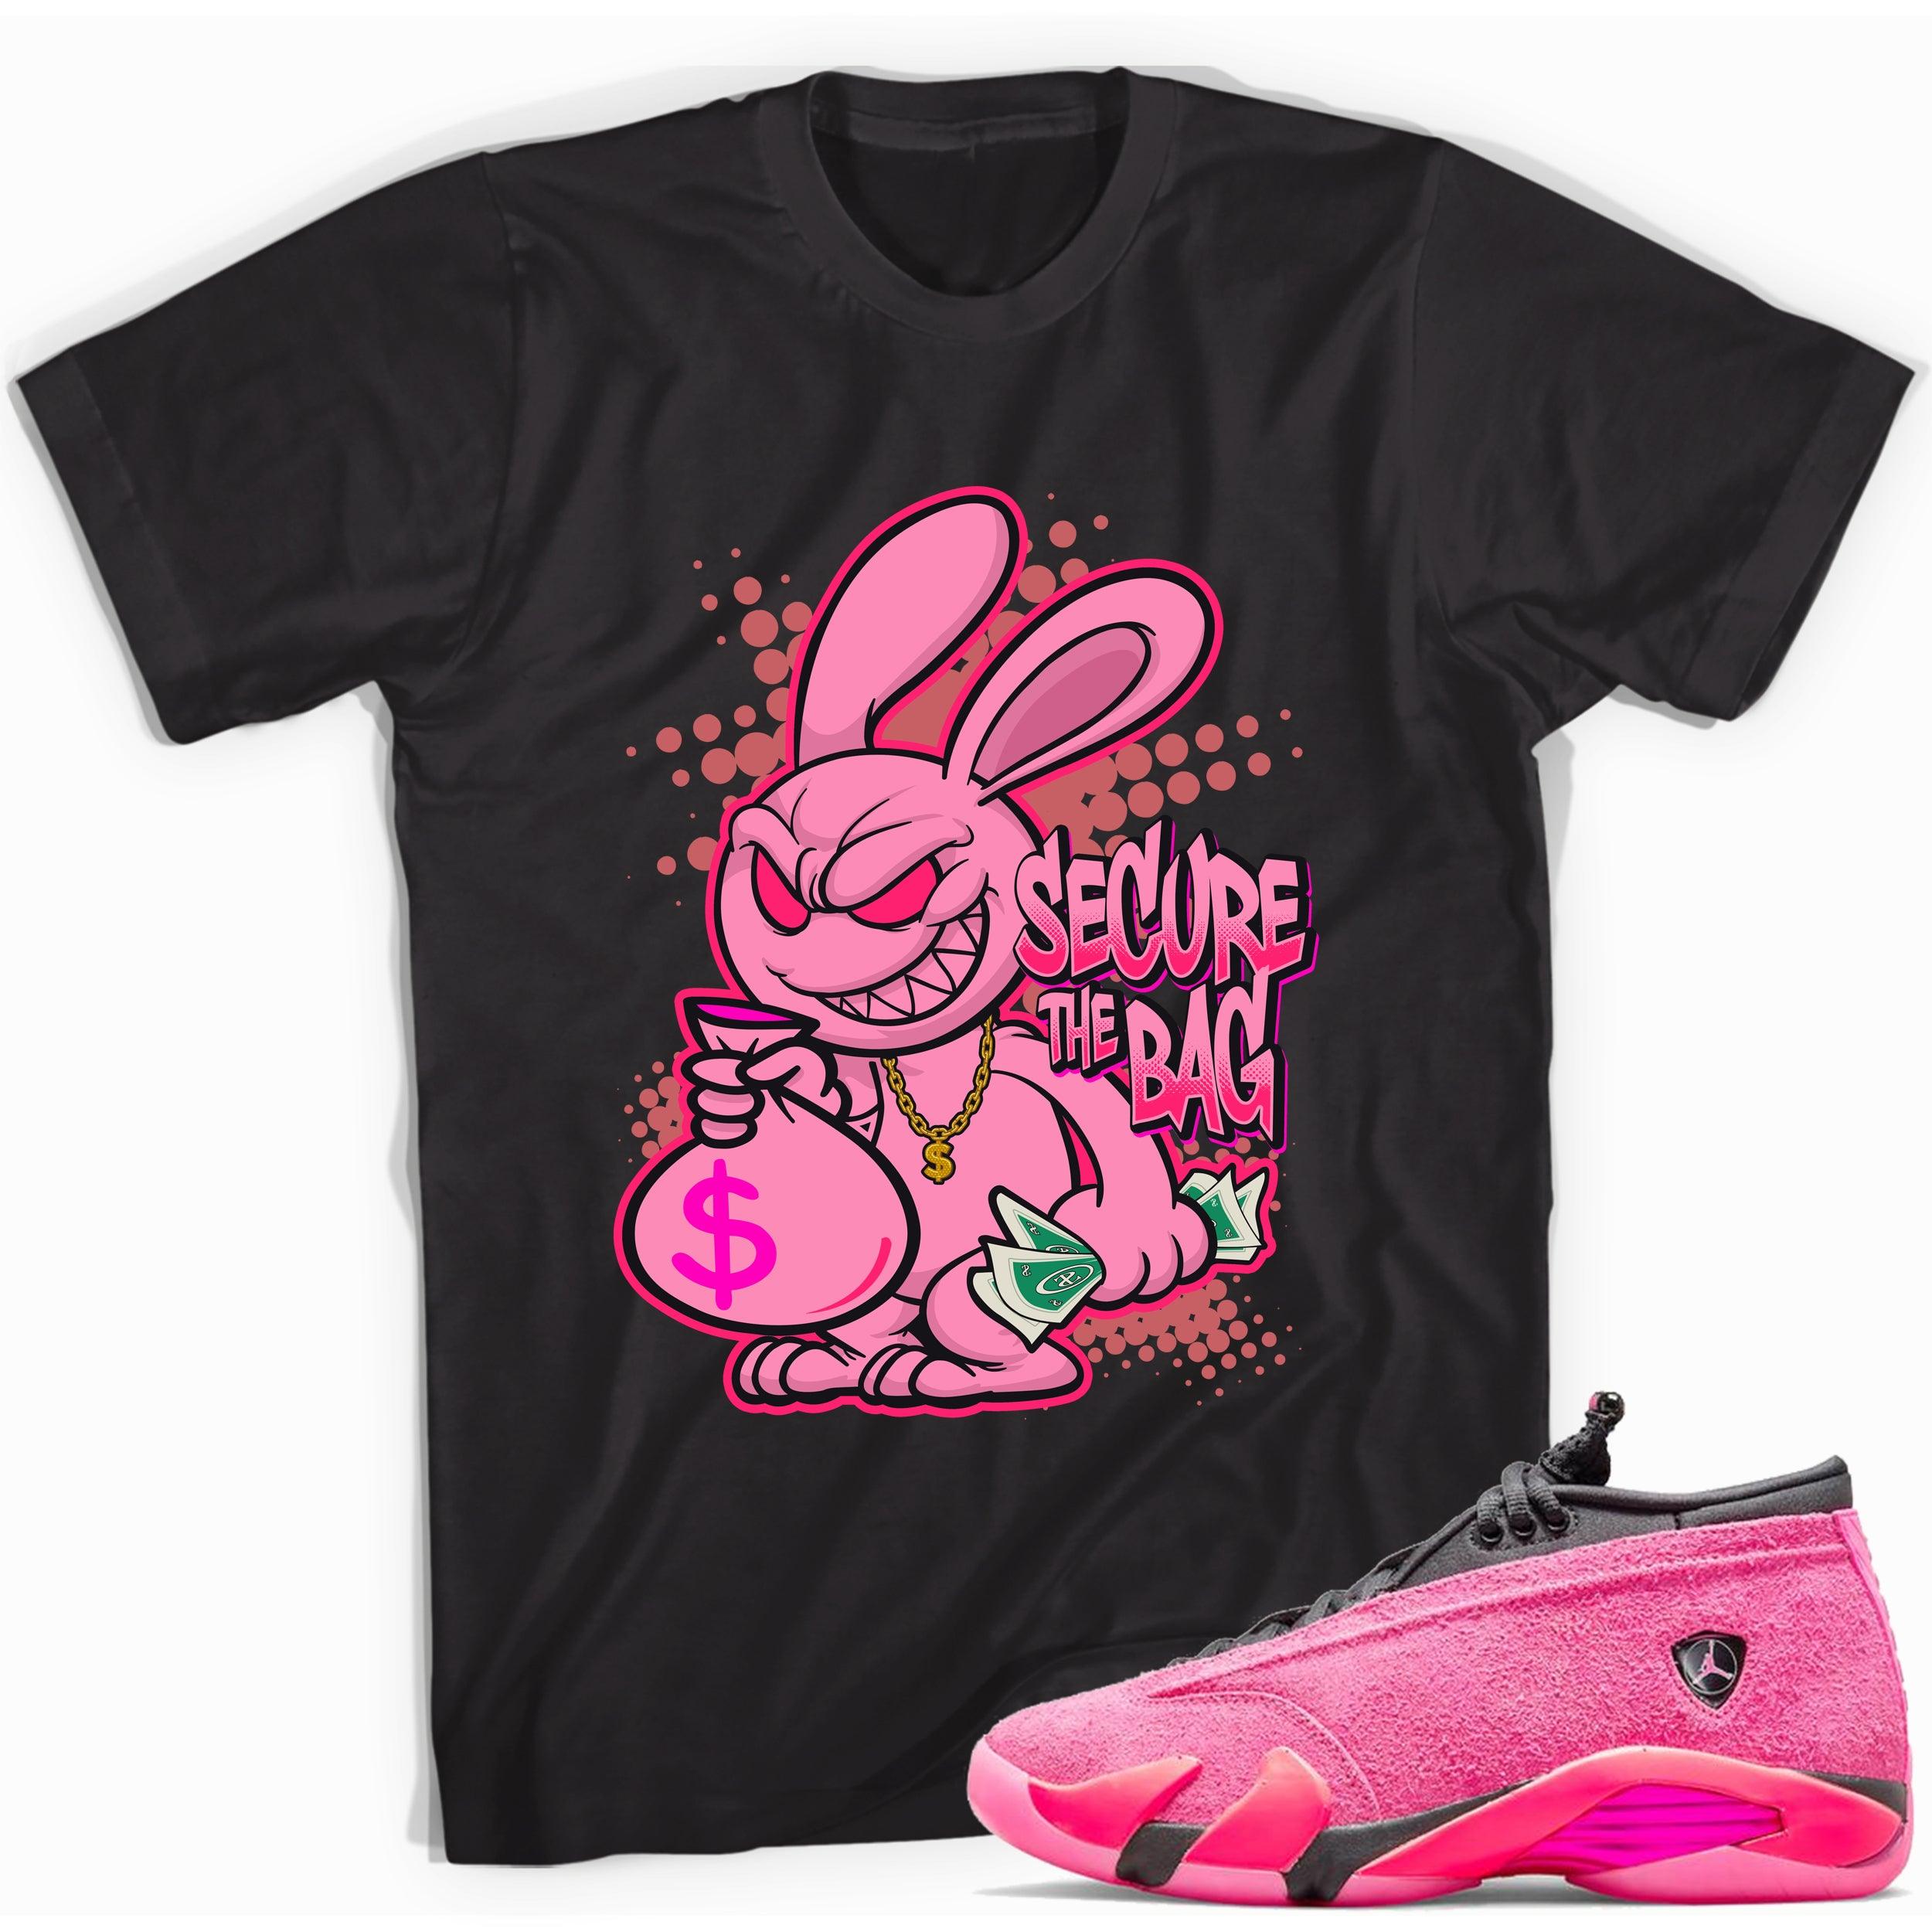 Black Secure The Bag Shirt Jordan 14s Low Shocking Pink photo